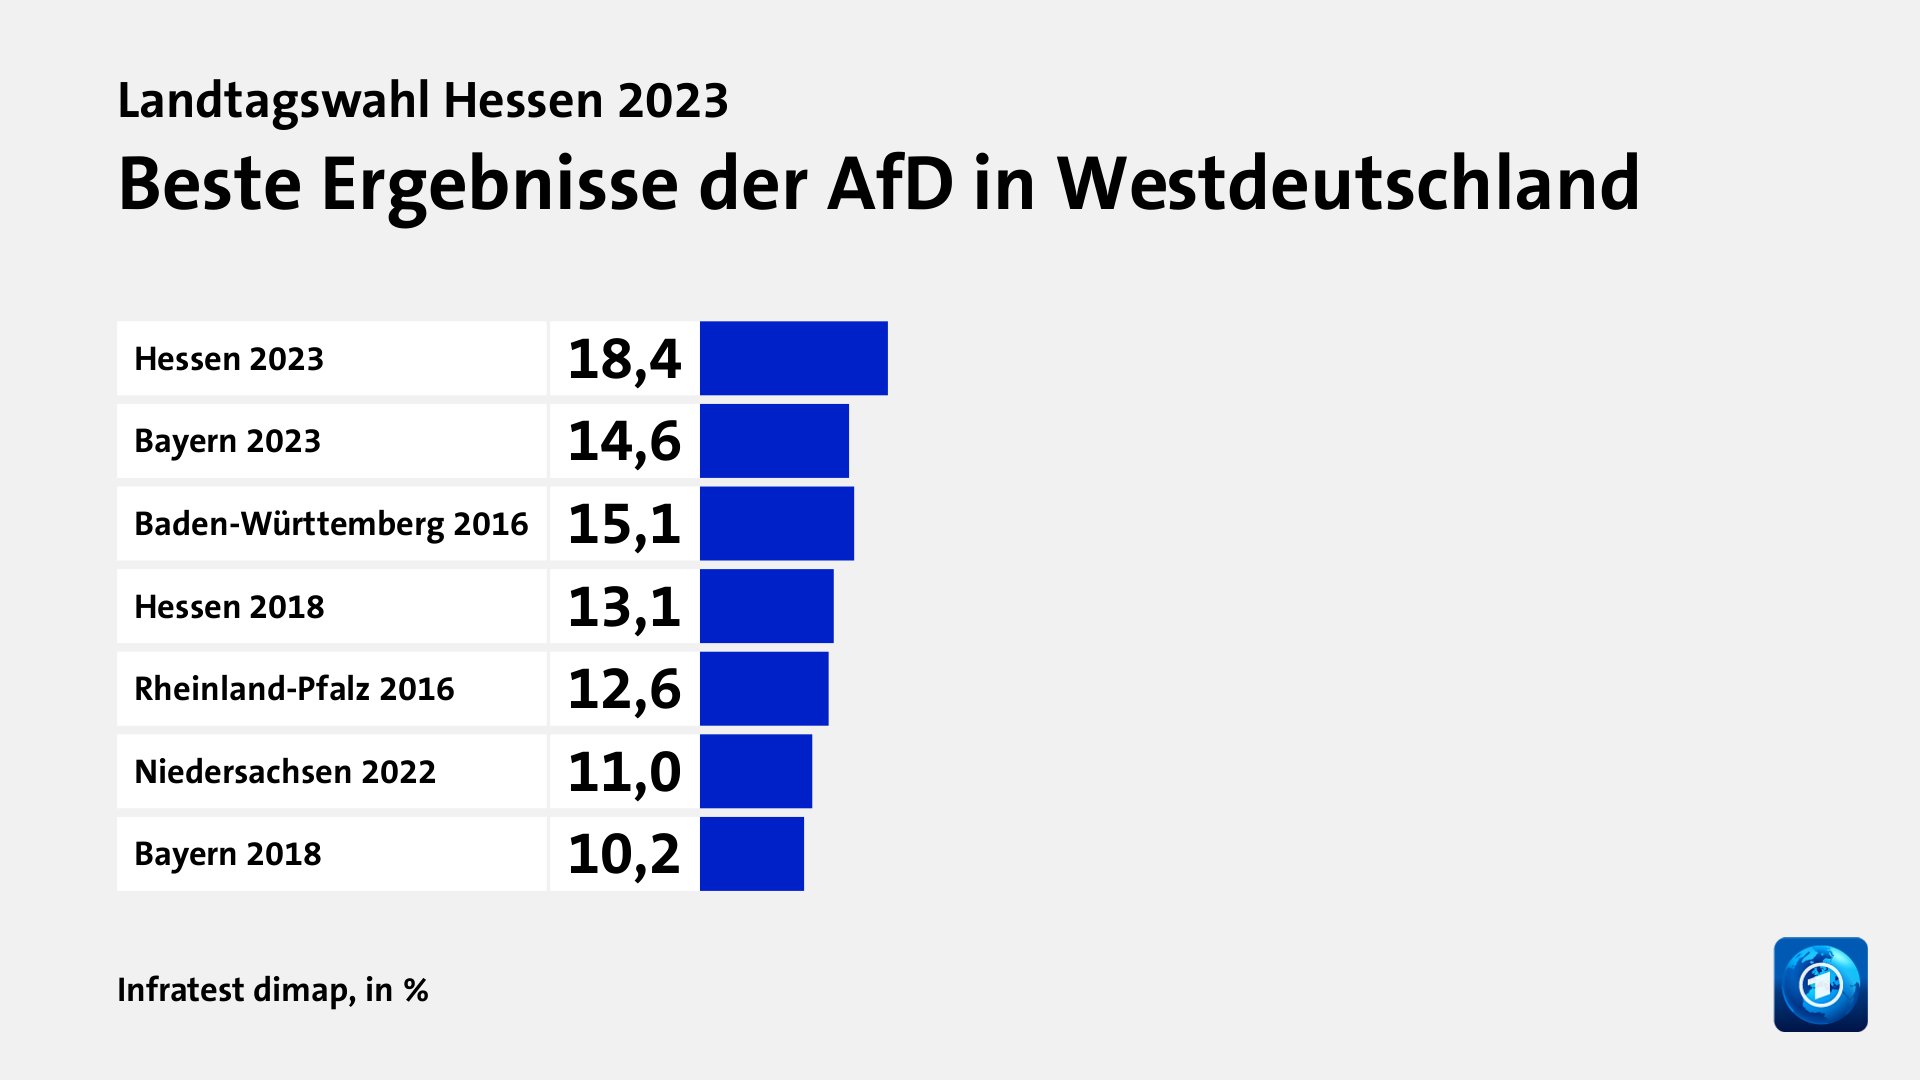 Beste Ergebnisse der AfD in Westdeutschland, in %: Hessen 2023 18, Bayern 2023 14, Baden-Württemberg 2016 15, Hessen 2018 13, Rheinland-Pfalz 2016 12, Niedersachsen 2022 11, Bayern 2018 10, Quelle: Infratest dimap